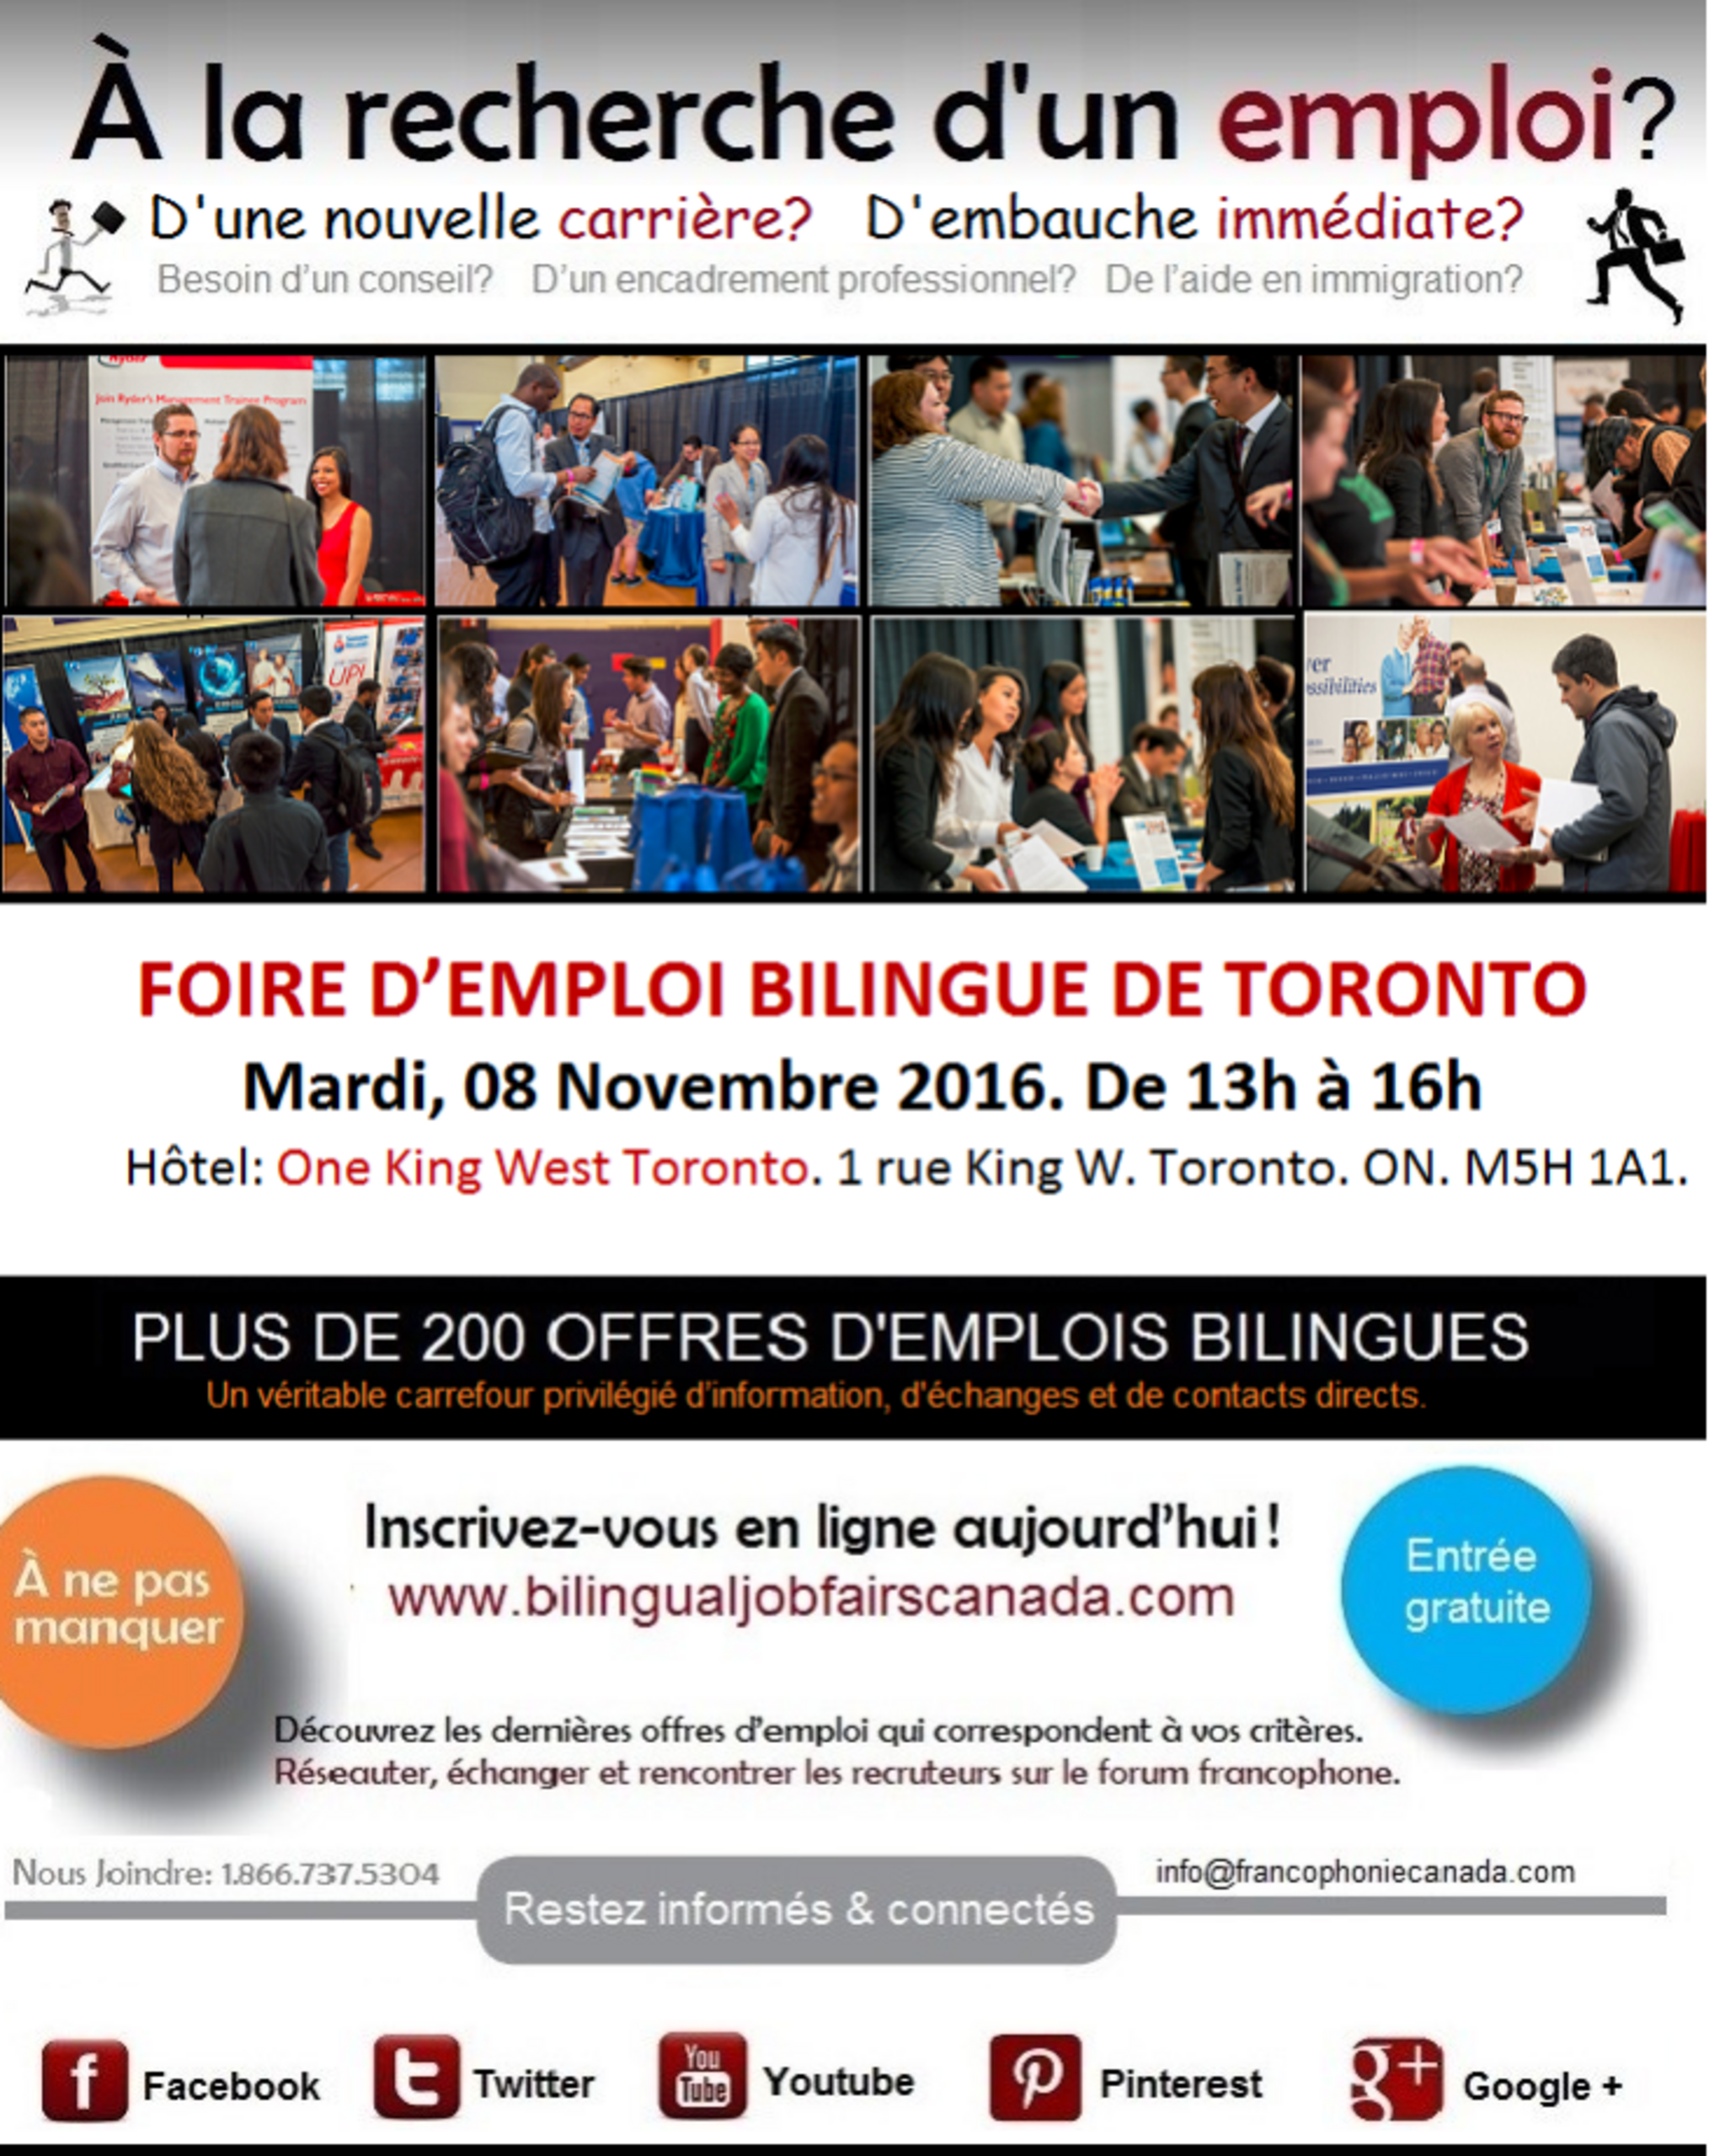 Bilingual job fair toronto march 8